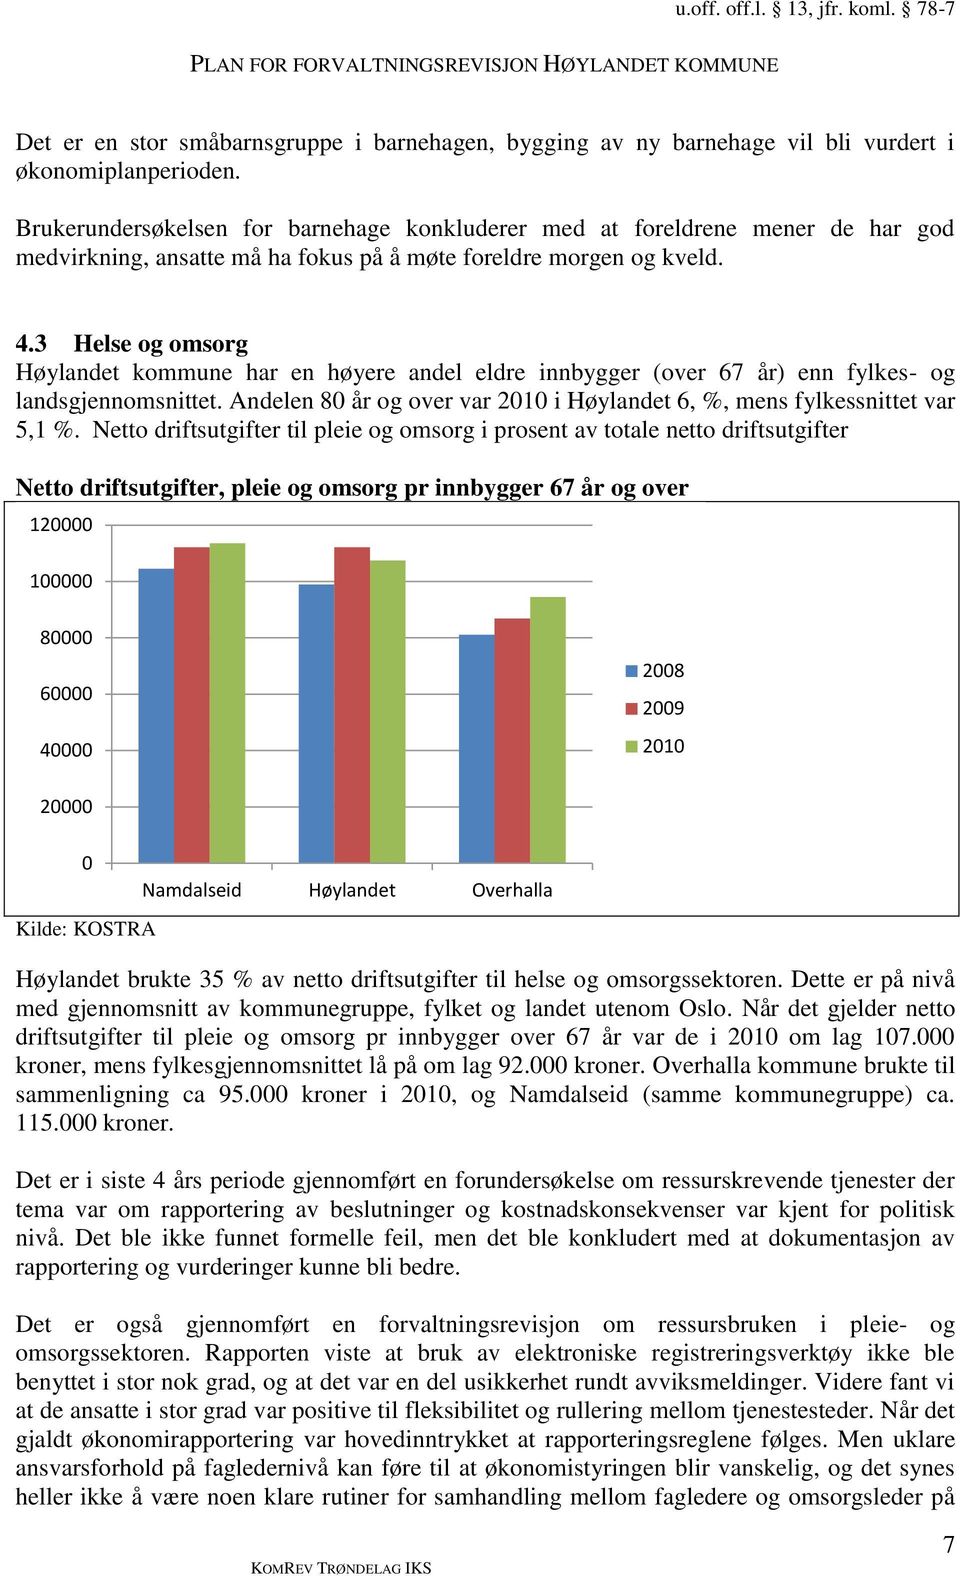 3 Helse og omsorg Høylandet kommune har en høyere andel eldre innbygger (over 67 år) enn fylkes- og landsgjennomsnittet. Andelen 80 år og over var 2010 i Høylandet 6, %, mens fylkessnittet var 5,1 %.